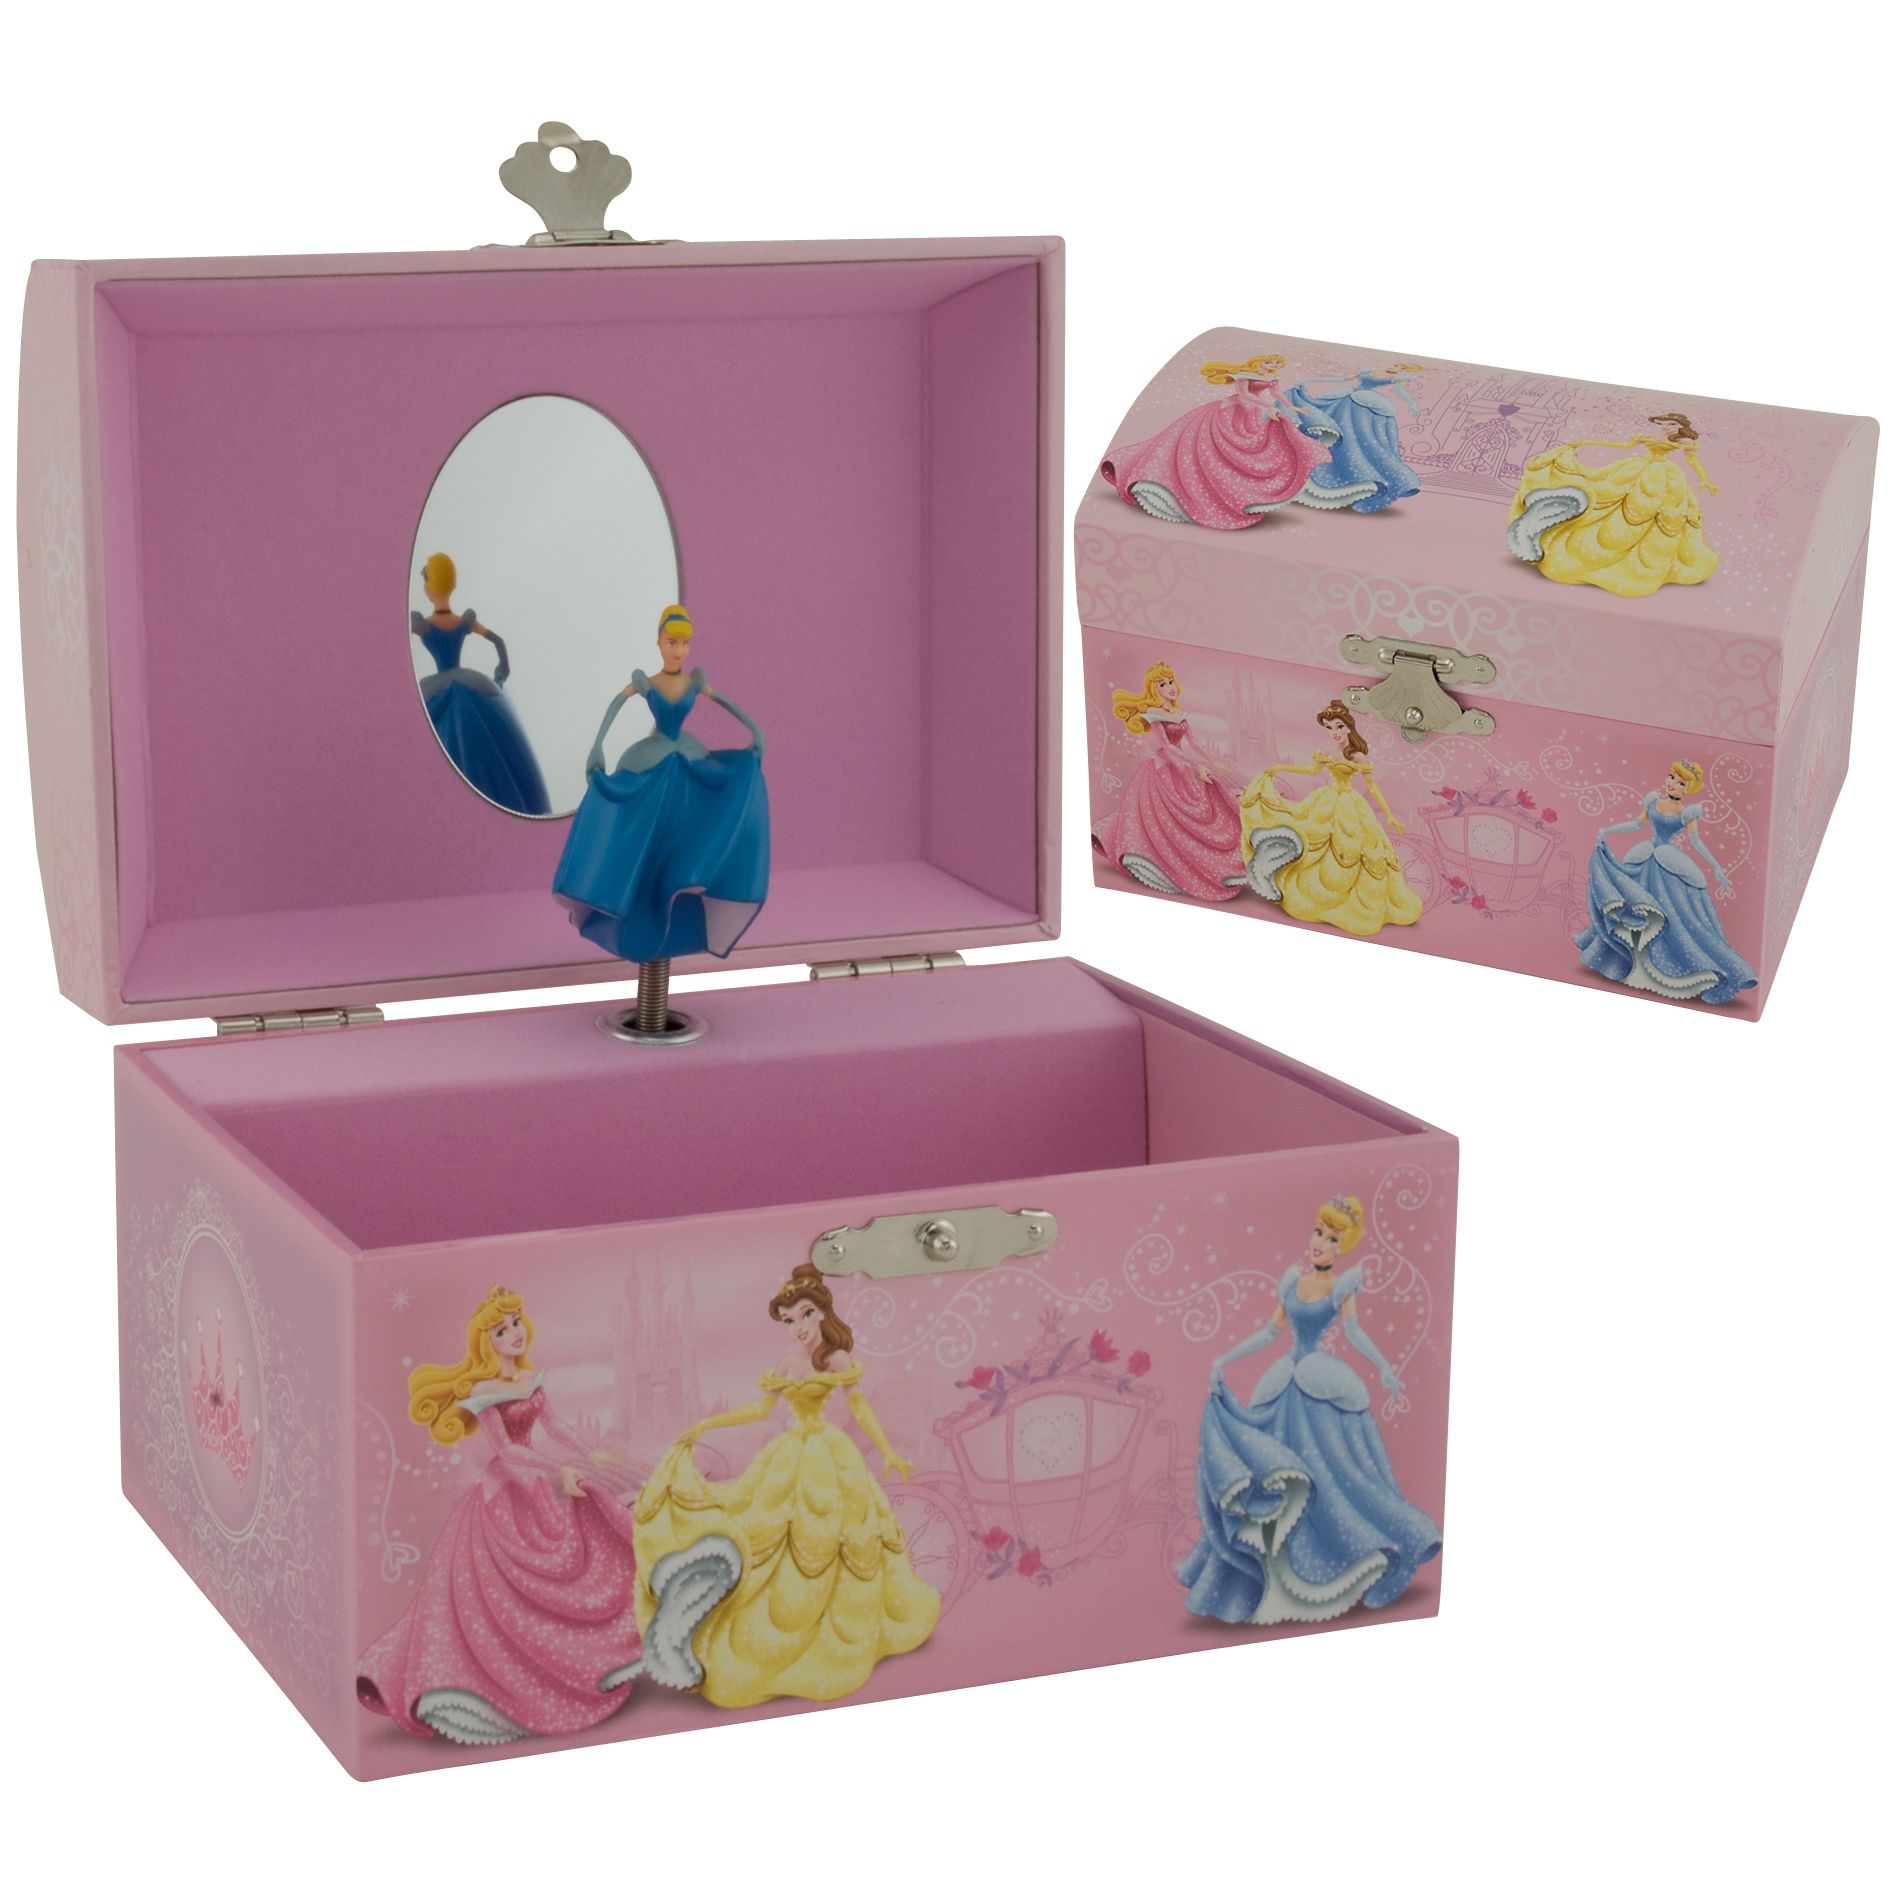 Disney Glimmering Princess Trinket Box Jewelry Jewelry